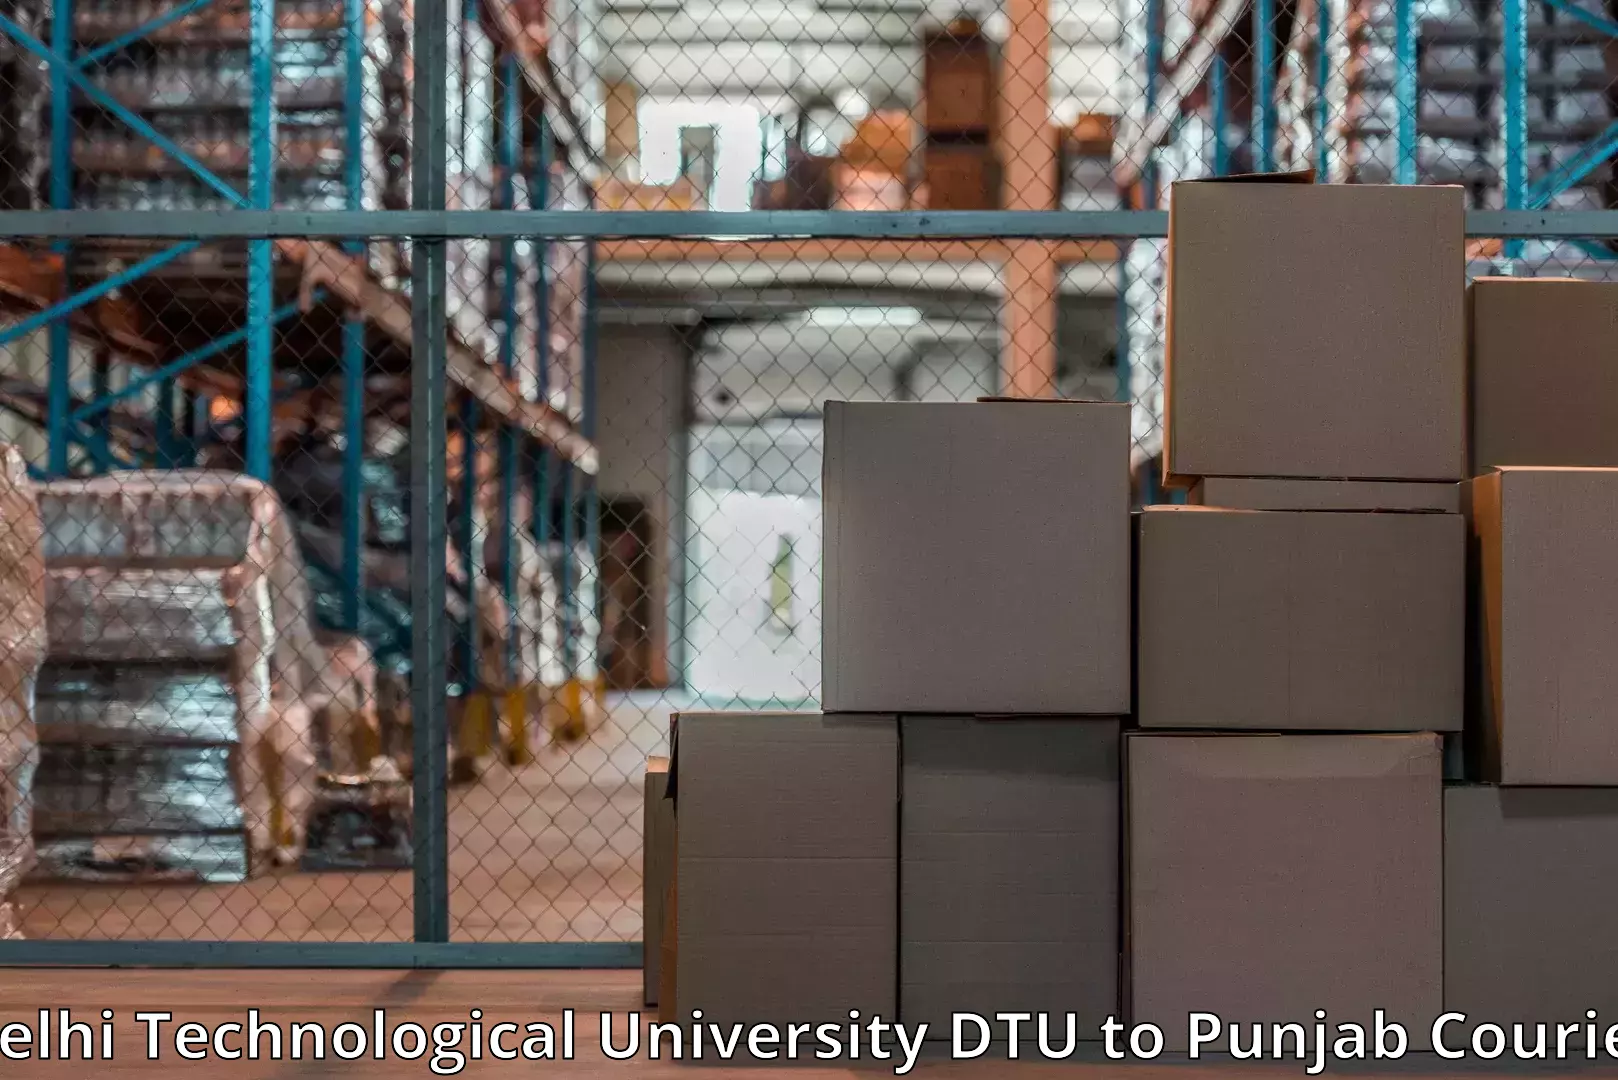 Door-to-door relocation services Delhi Technological University DTU to Ajnala